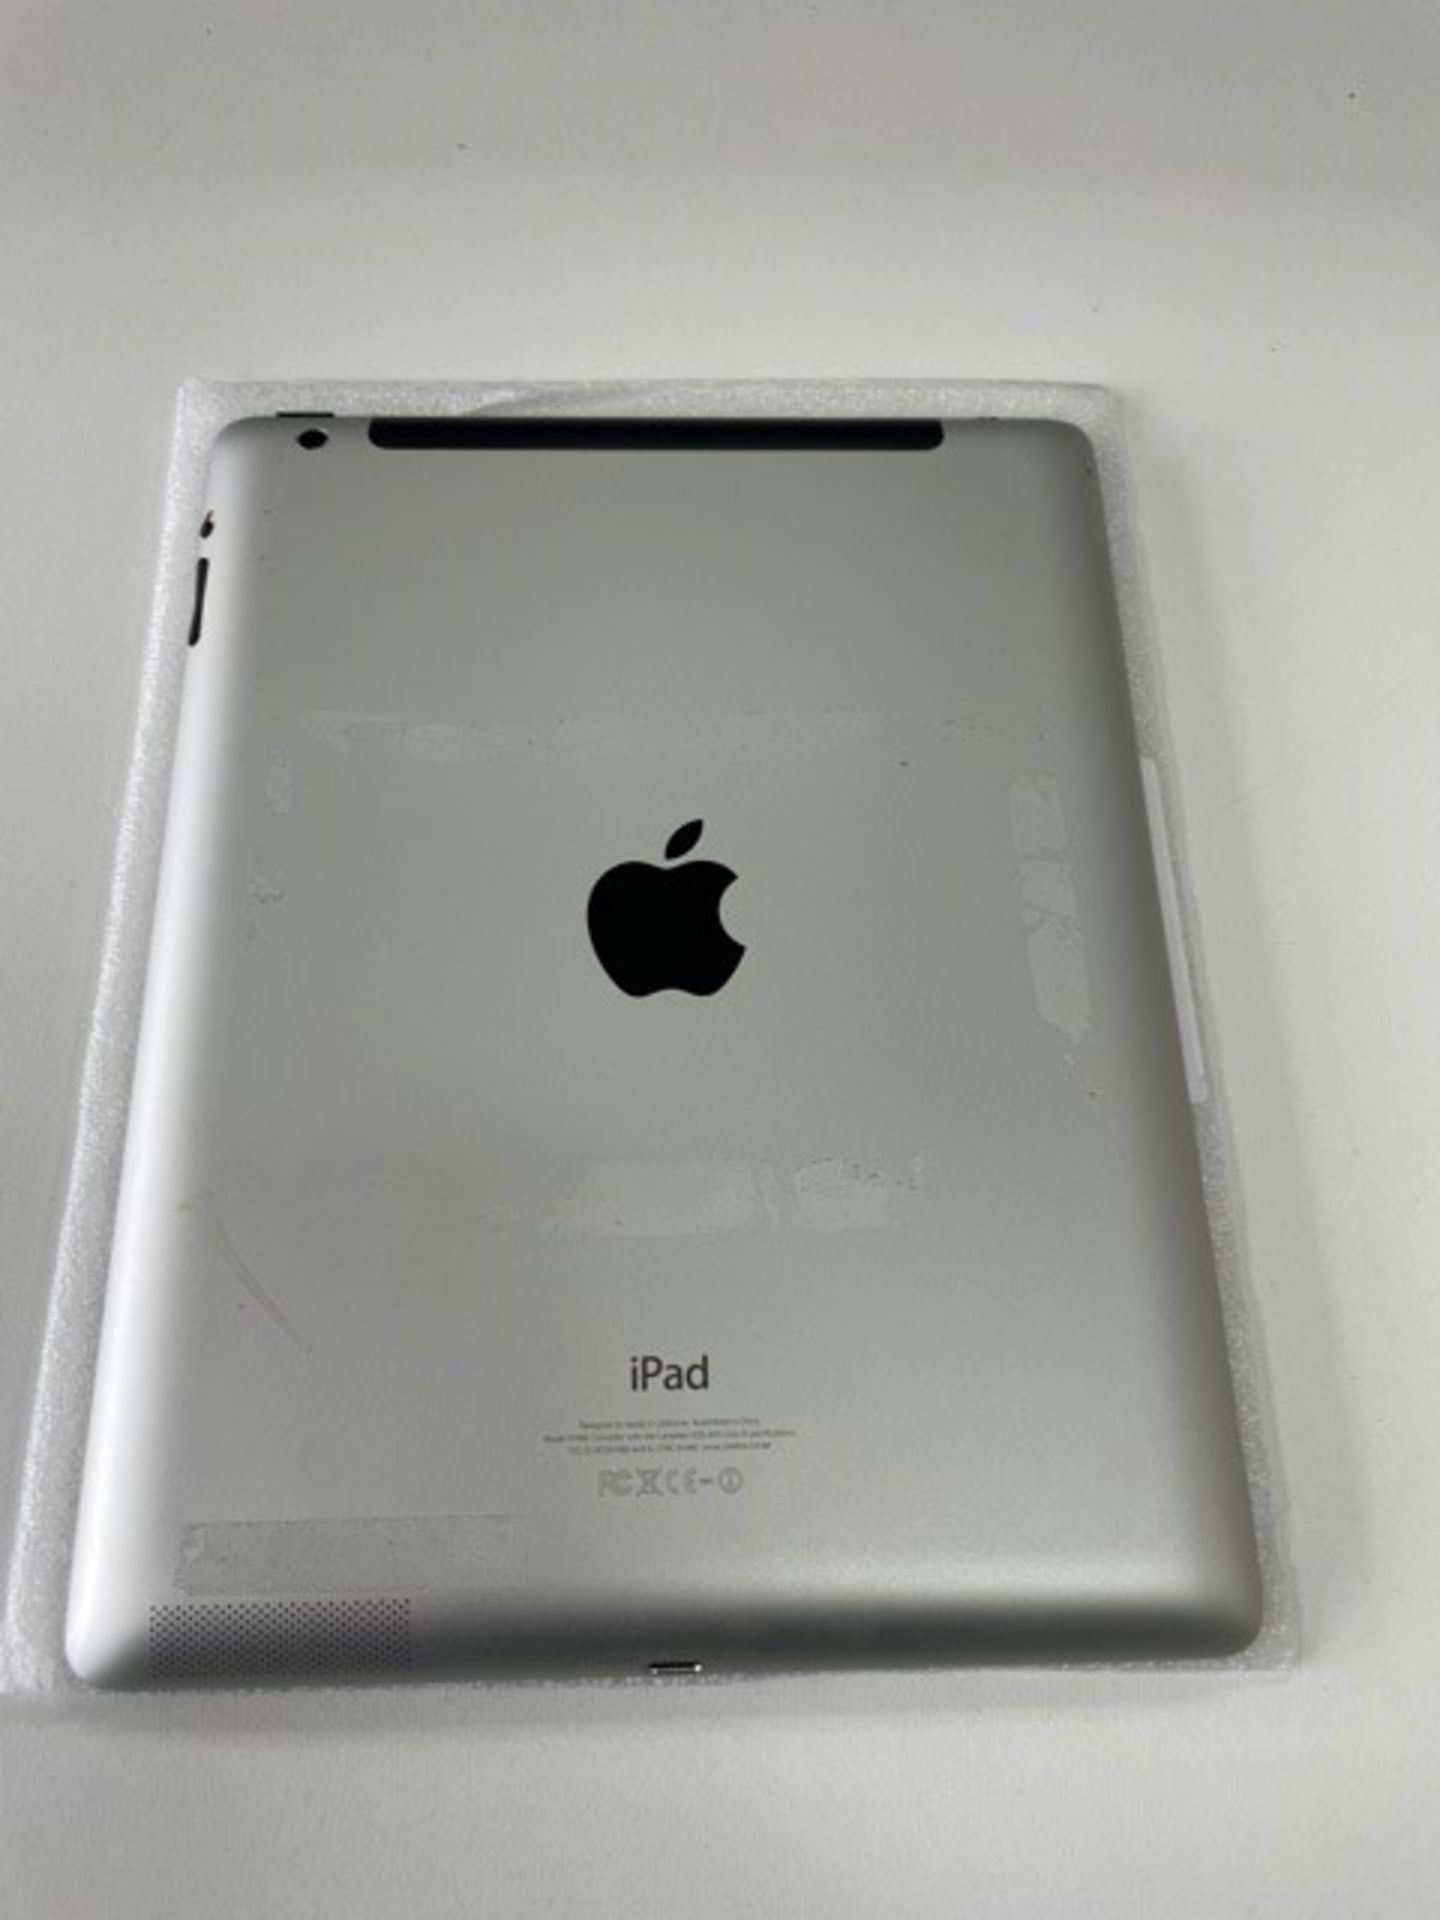 Used Apple iPad G4 Tablet | 16GB | DMPK5CXVF18P - Image 2 of 4